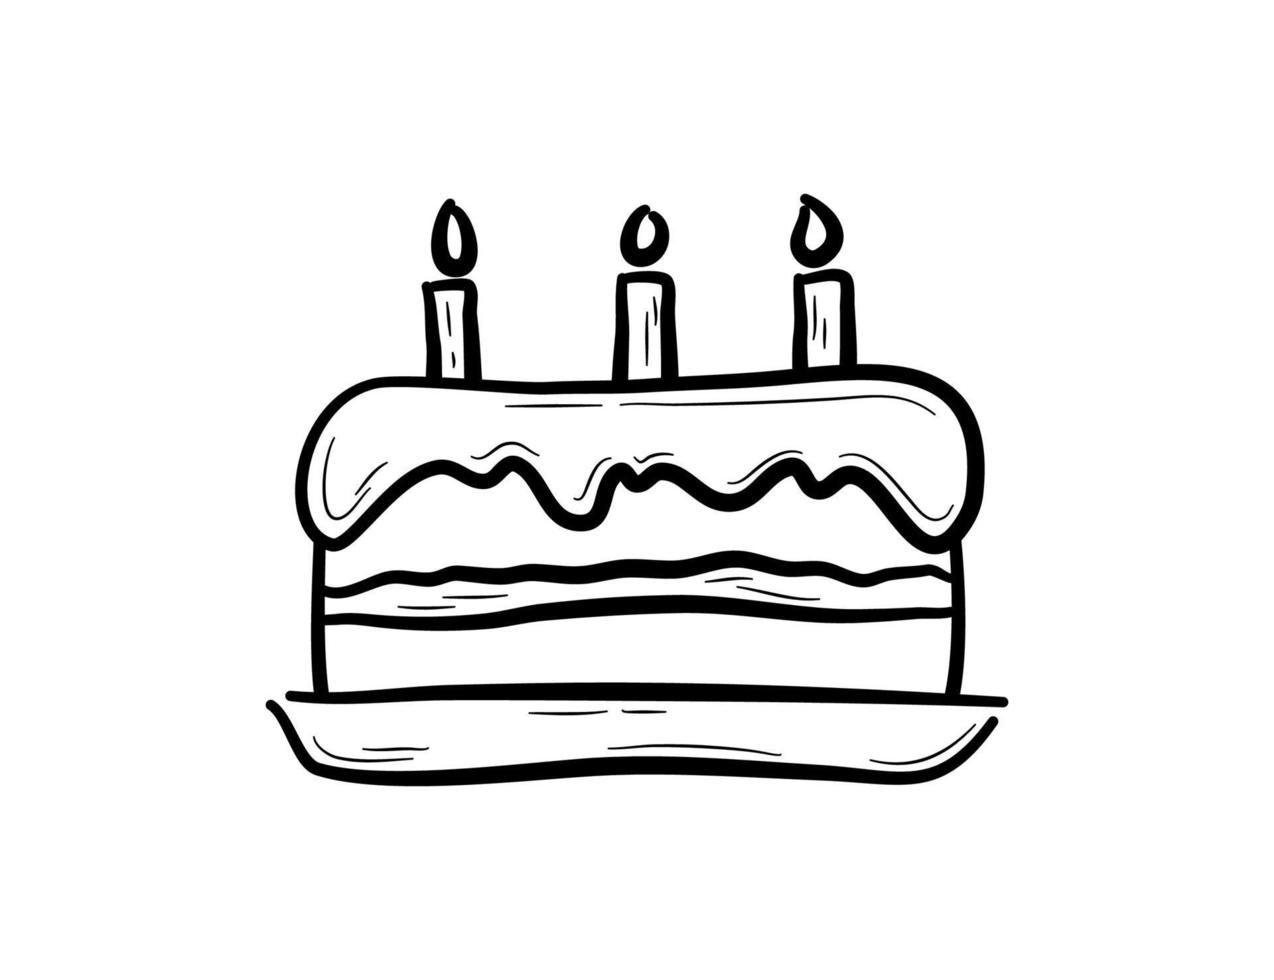 gâteau d'anniversaire dessiné à la main avec des bougies. dessert pour fête d'anniversaire, célébration. illustration vectorielle dans un style doodle. vecteur